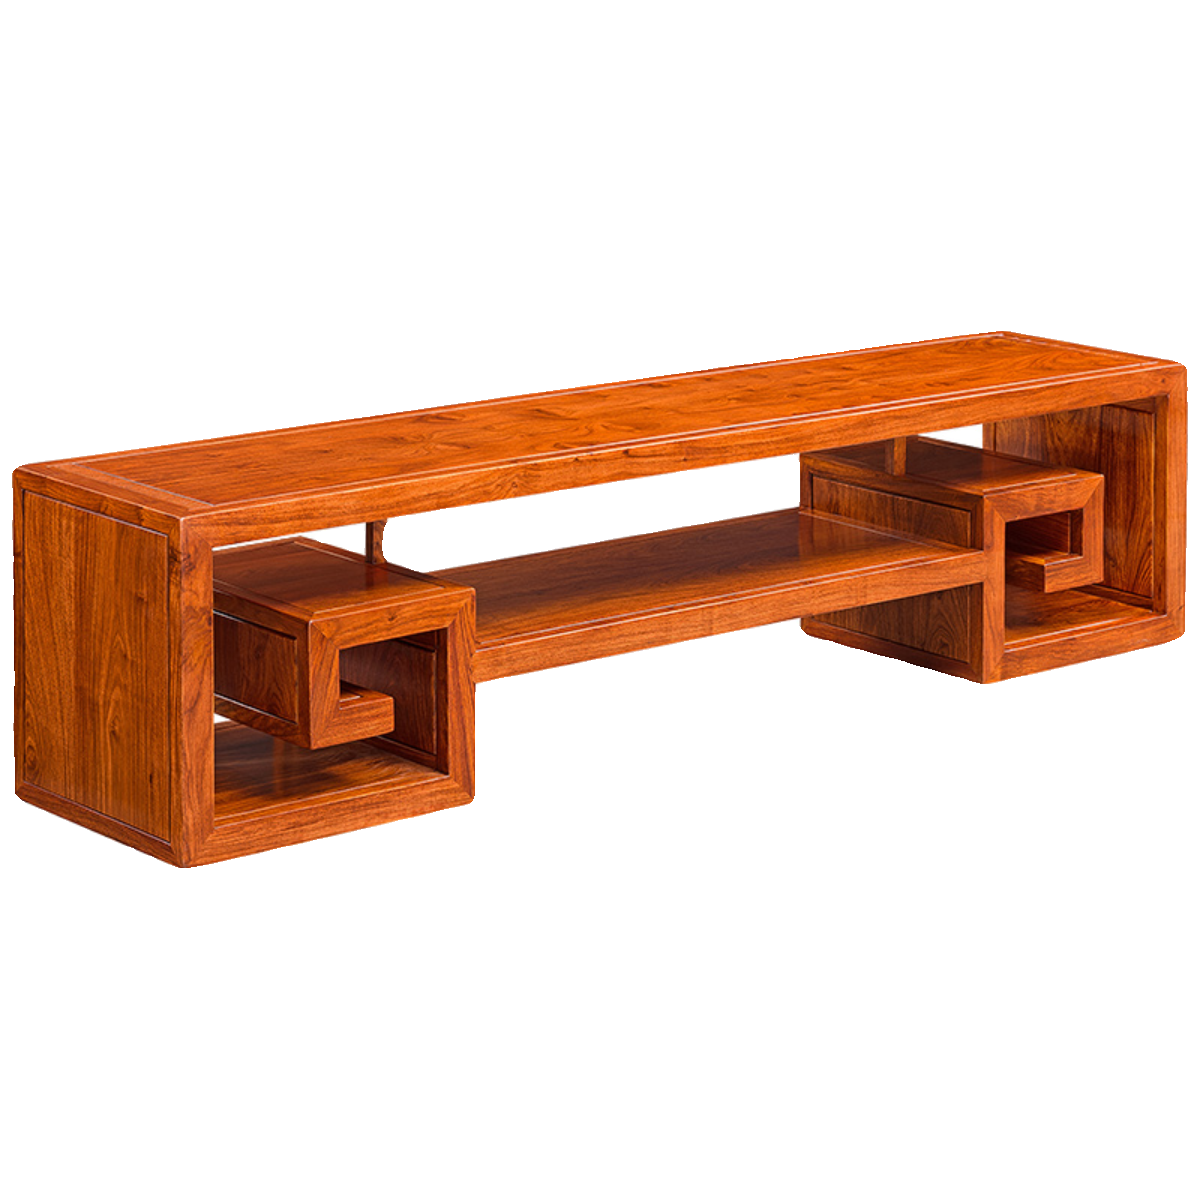 金鲤鱼 红木家具中式简约回形电视柜 刺猬紫檀花梨木地柜实木矮柜 - 图3